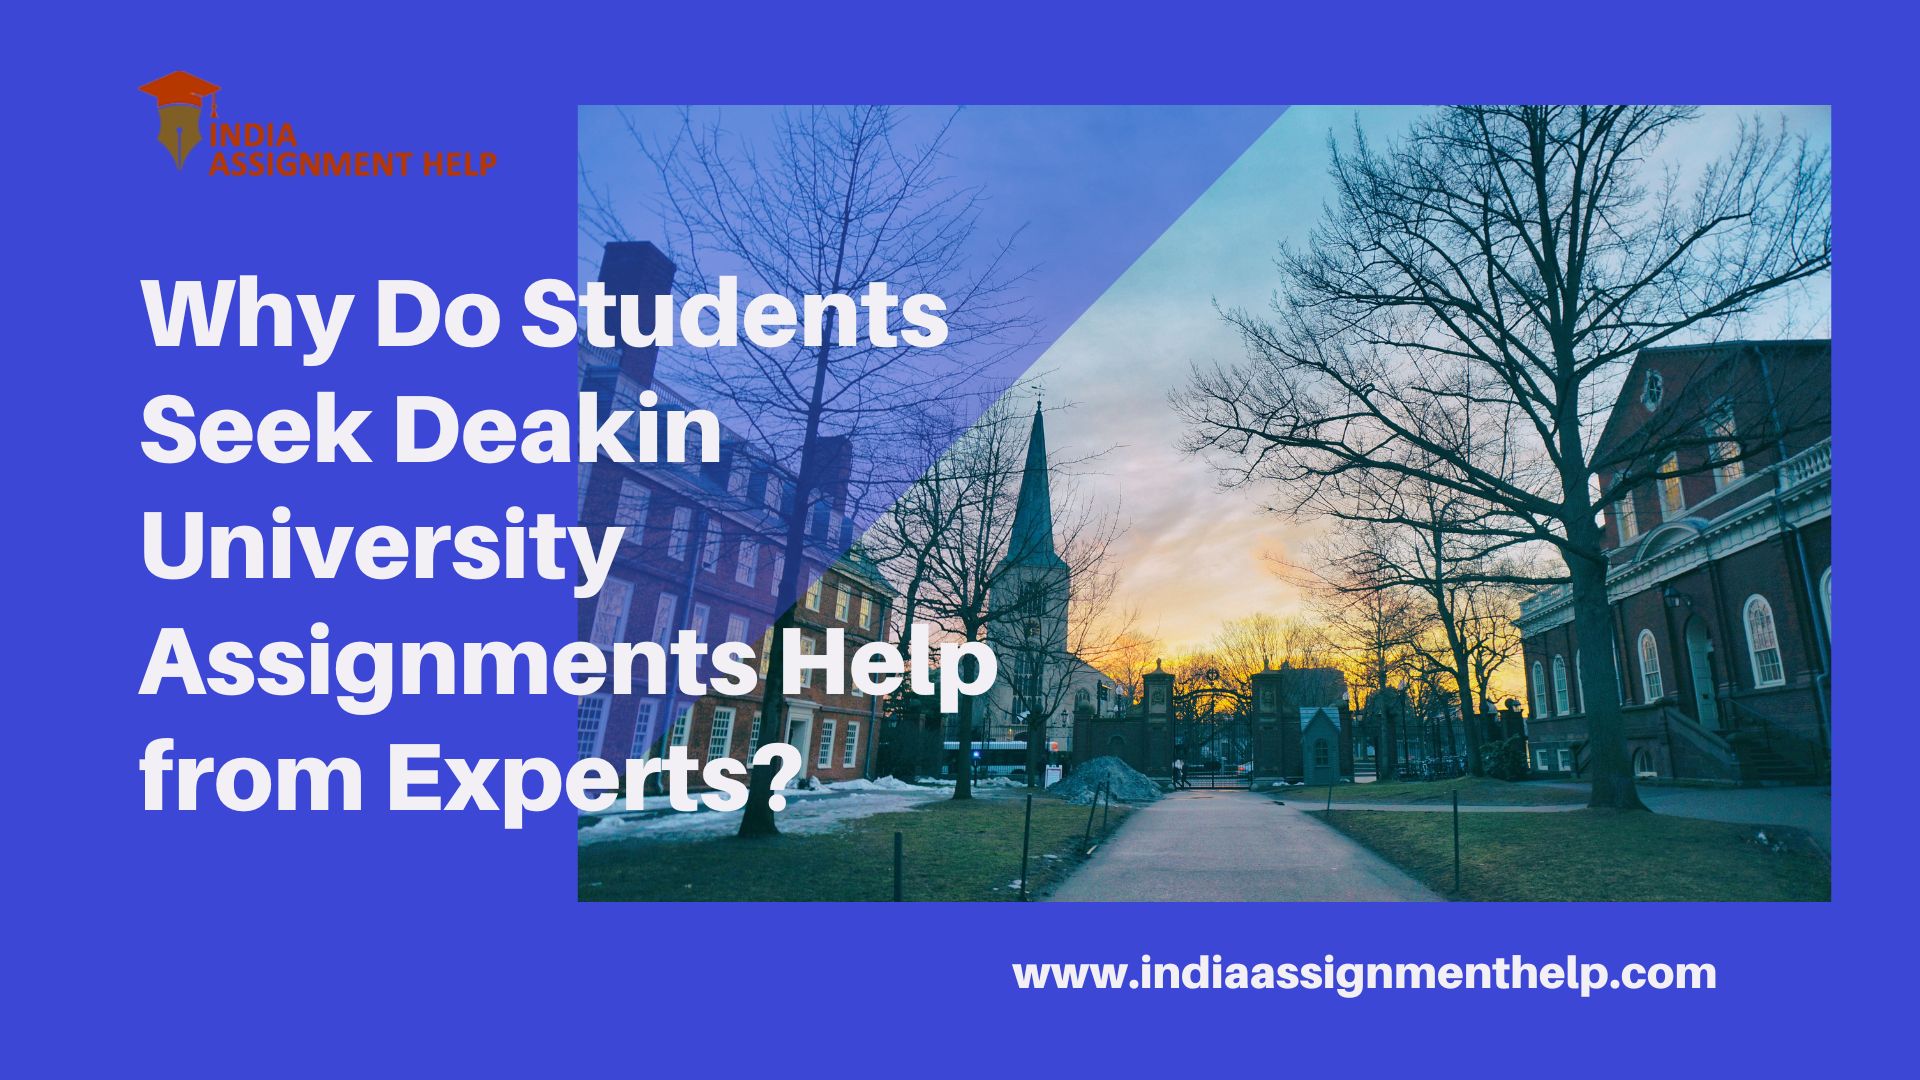 Deakin University Assignments Help